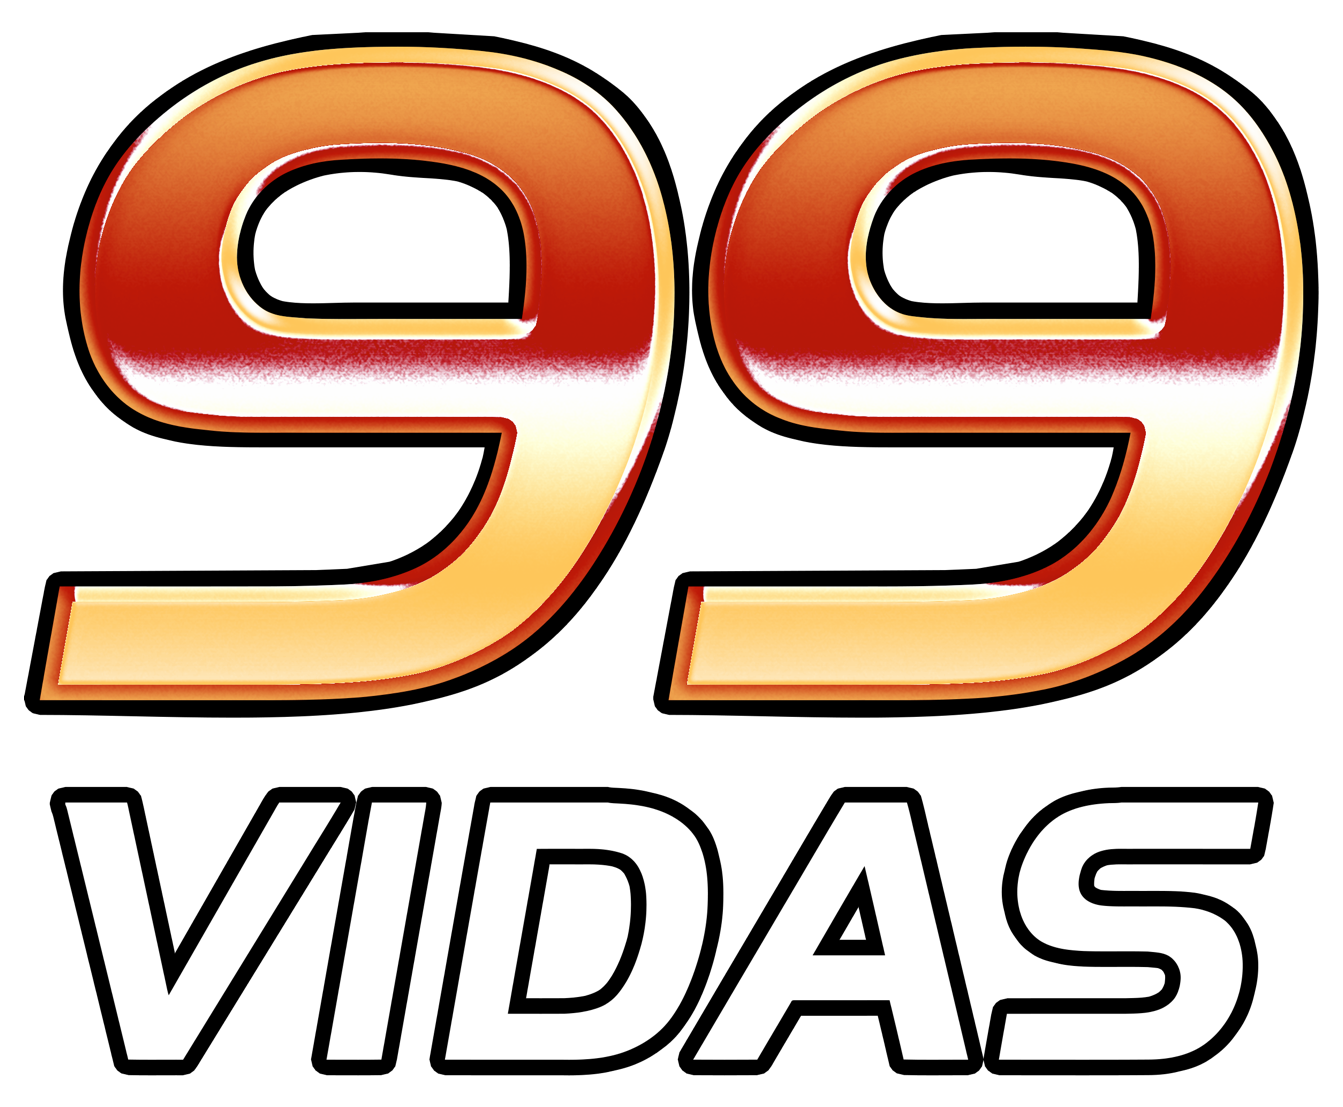 99Vidas 495 - Qual a Melhor franquia da Nintendo? - 99Vidas Podcast